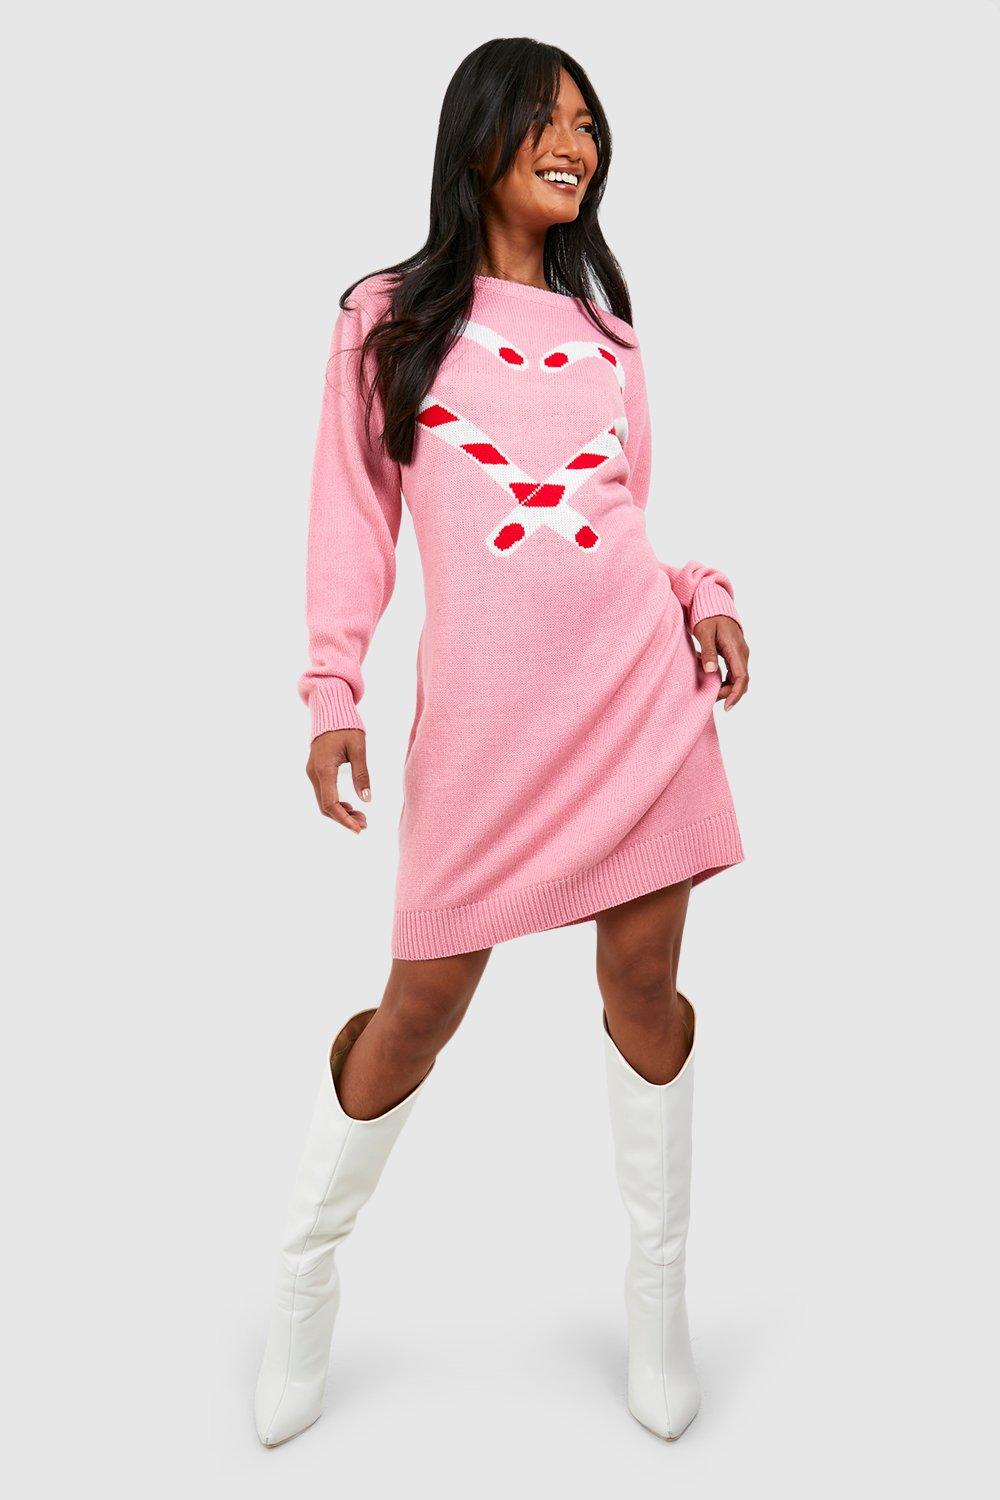 Weihnachts-Pulloverkleid Mit Candy Cane Print - Pink - M, Pink von boohoo